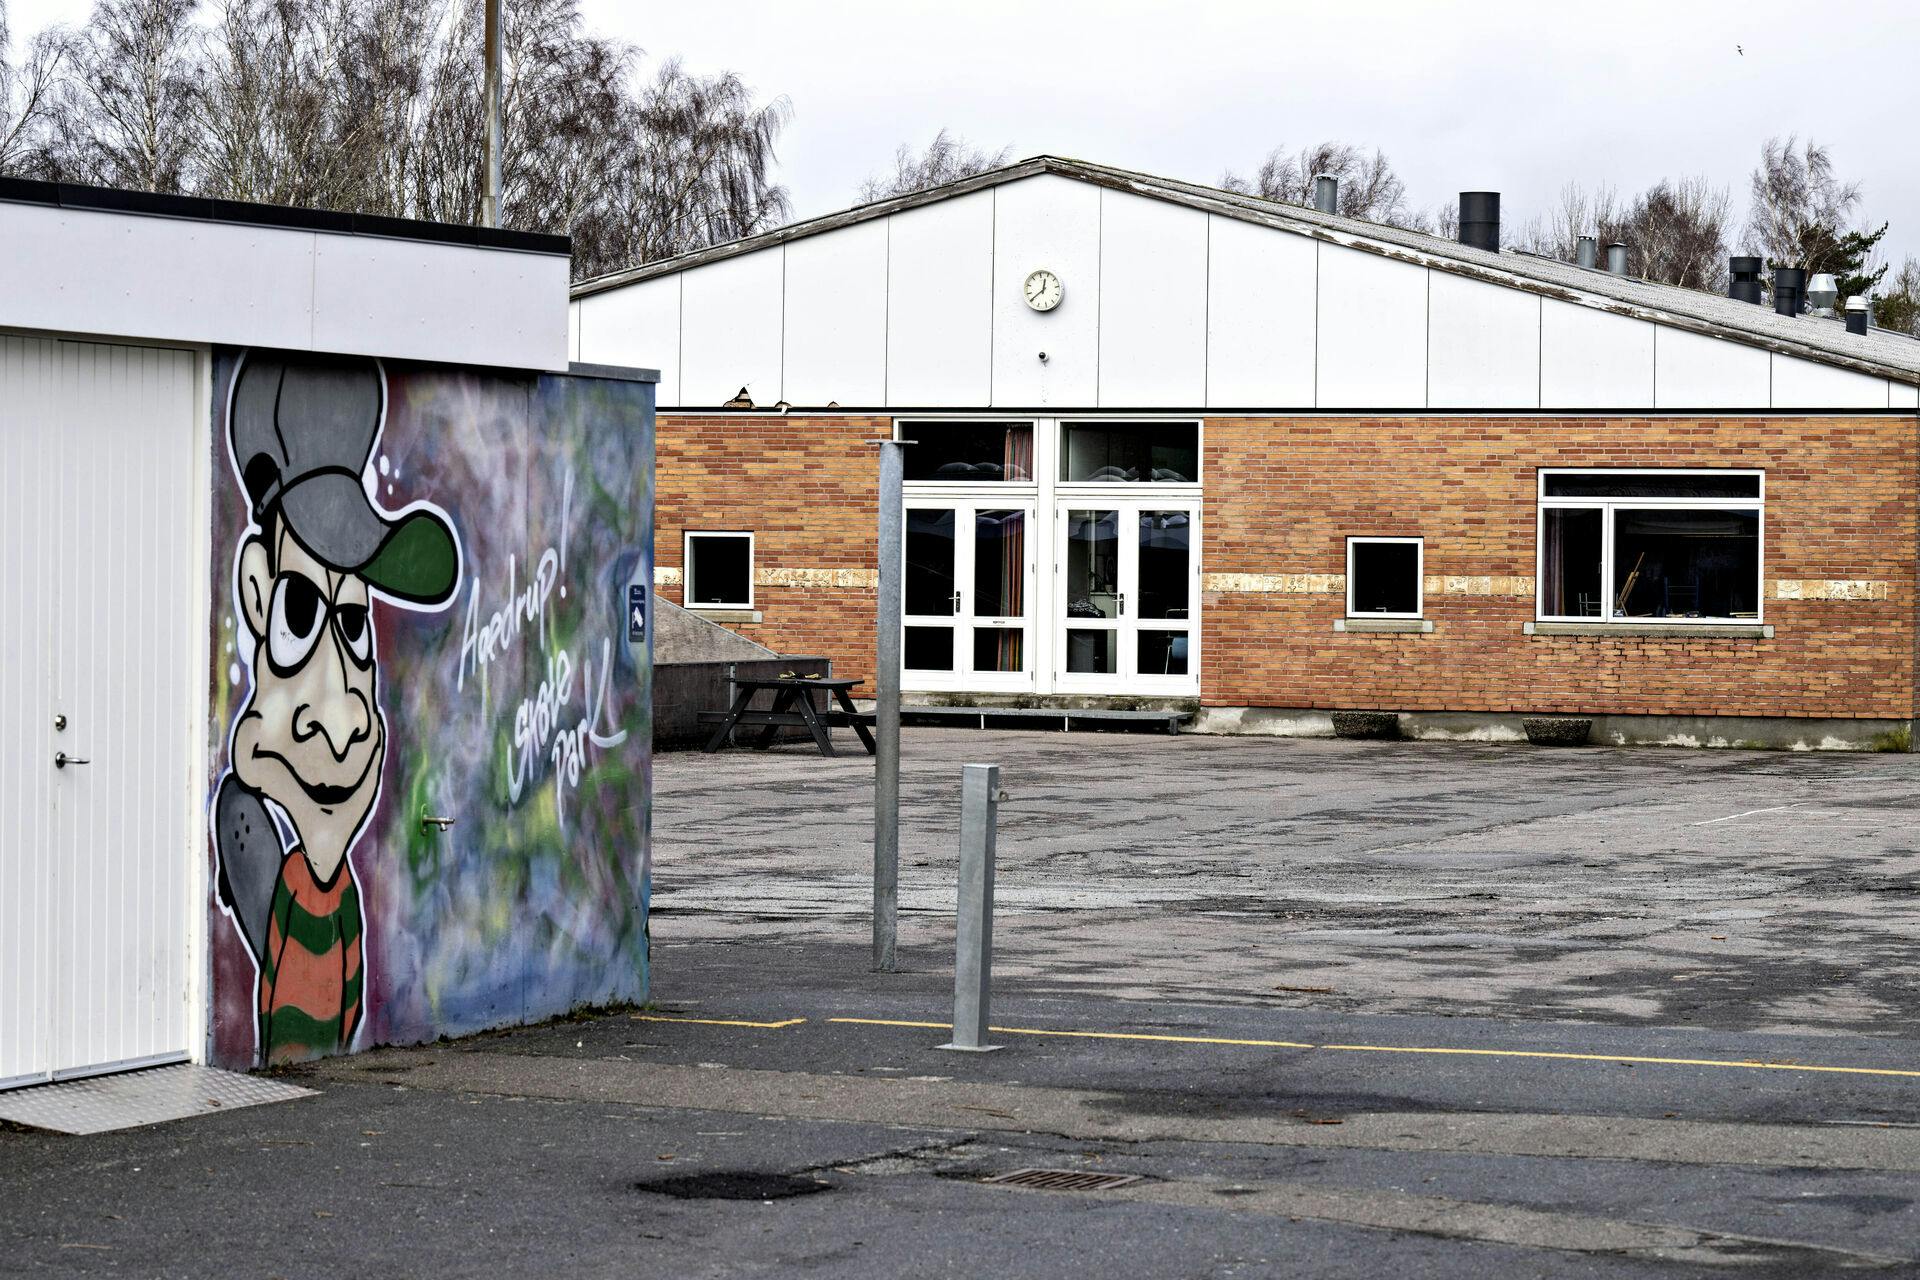 Ledelsen på Agedrup Skole ved Odense kender blandt andet til tre episoder om trusler med kniv og et tilfælde, hvor et barn har fået "11-års tæsk".